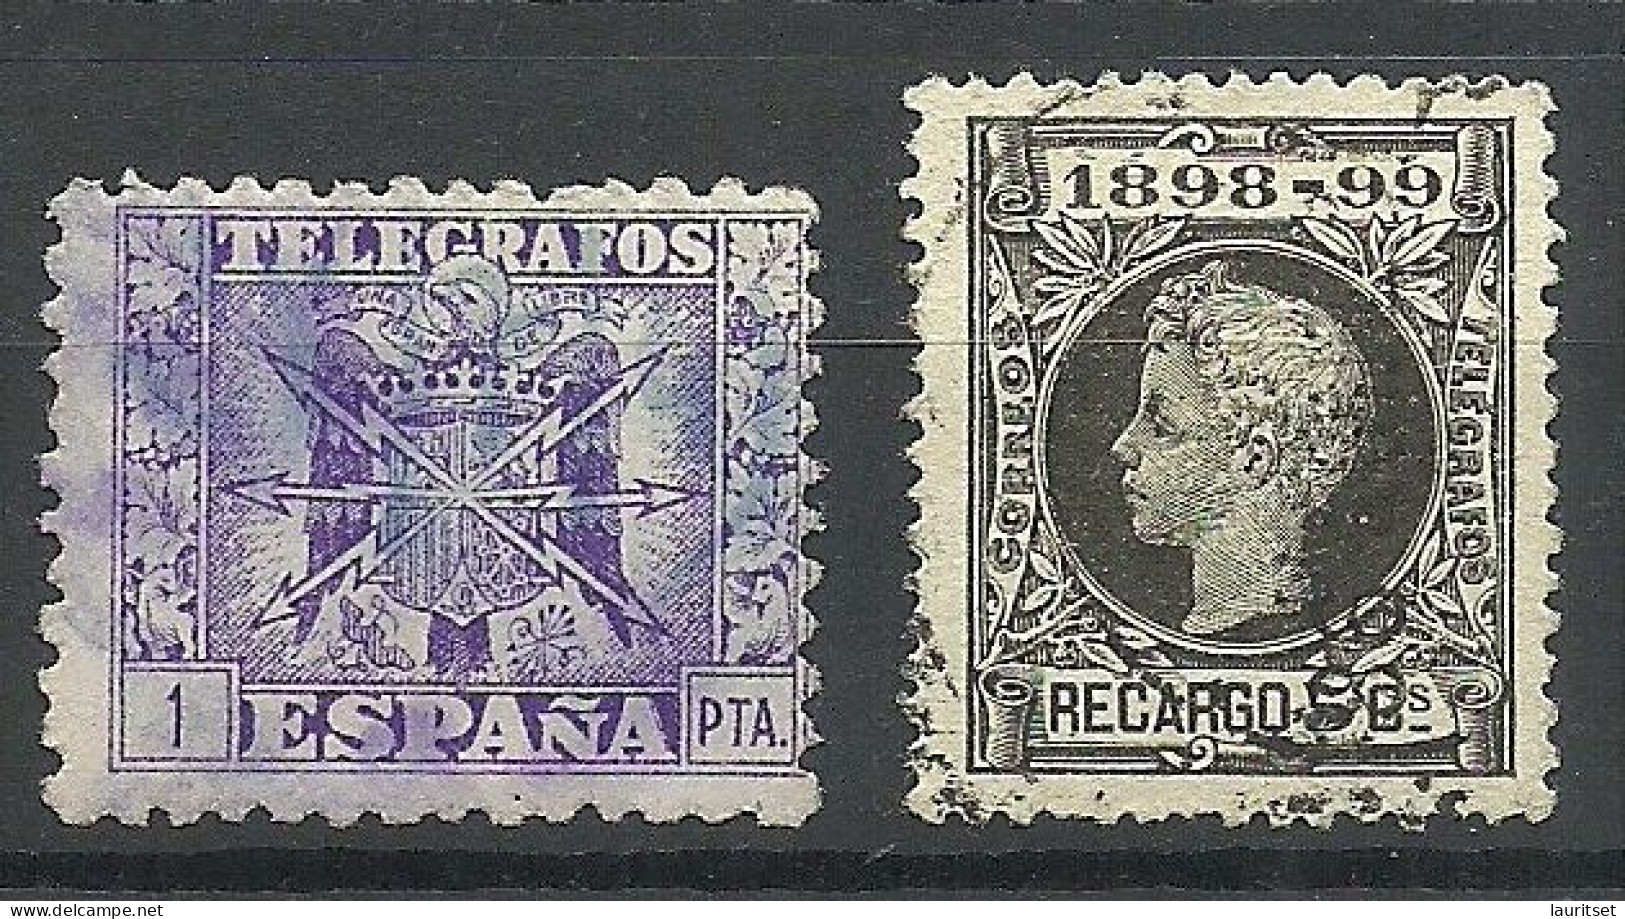 SPAIN Spanien Espana Telegrafos Telegraph Stamps Telegraphe, 2 Stamps, O - Telegraph